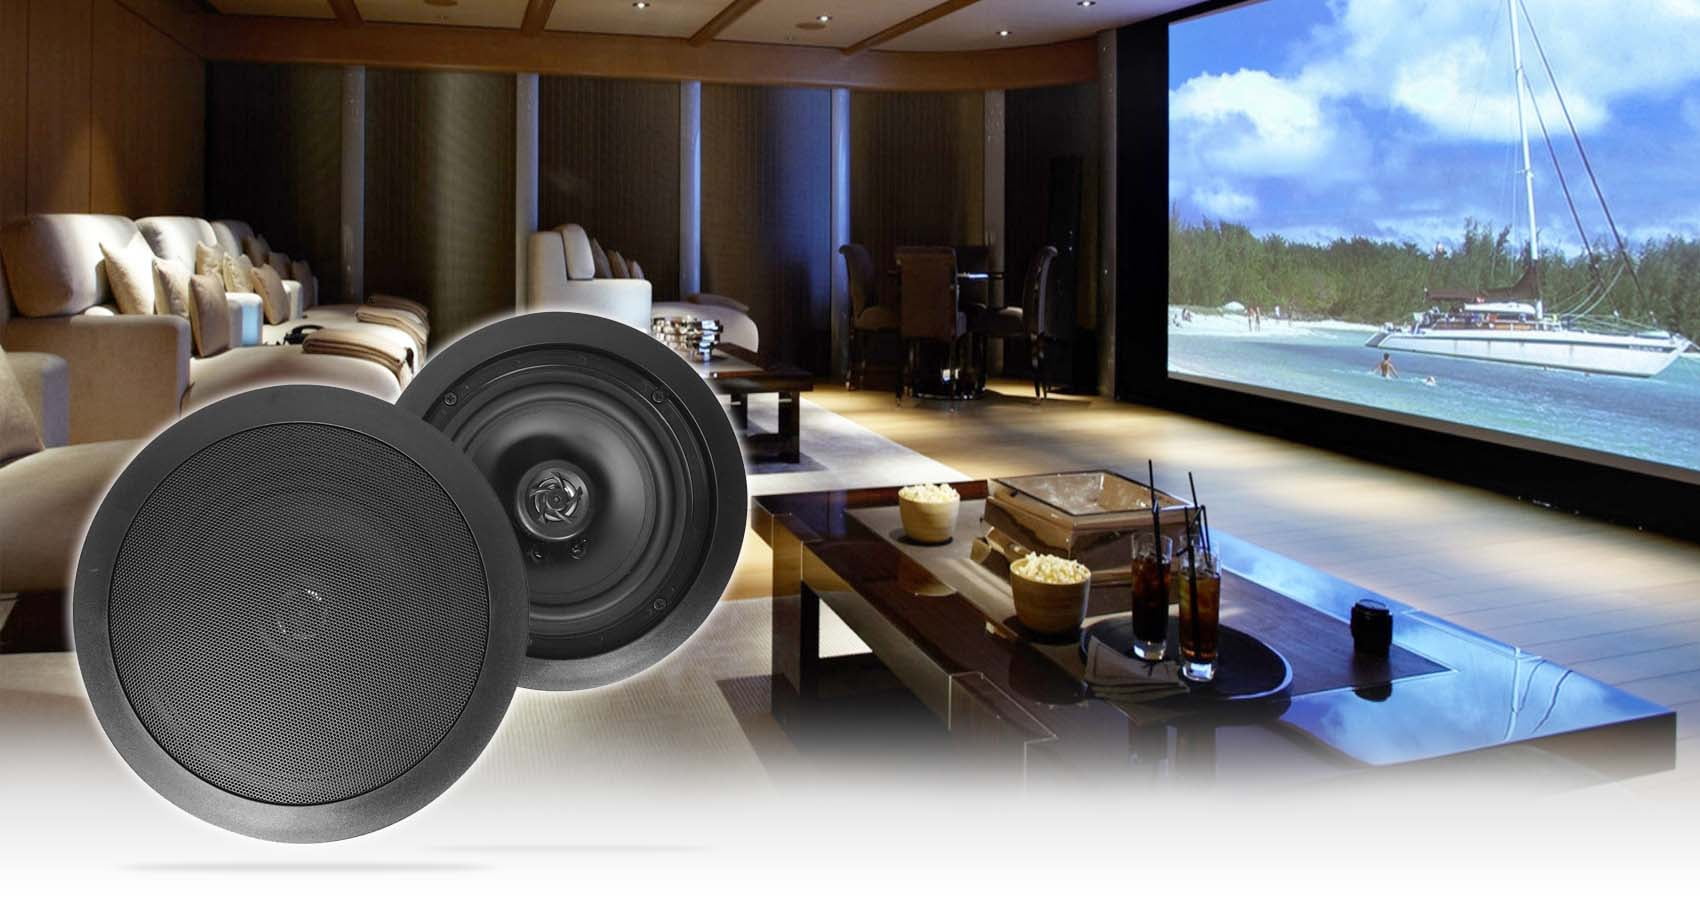 Pair of 8Ω 50w Water Resistant Ceiling Speakers